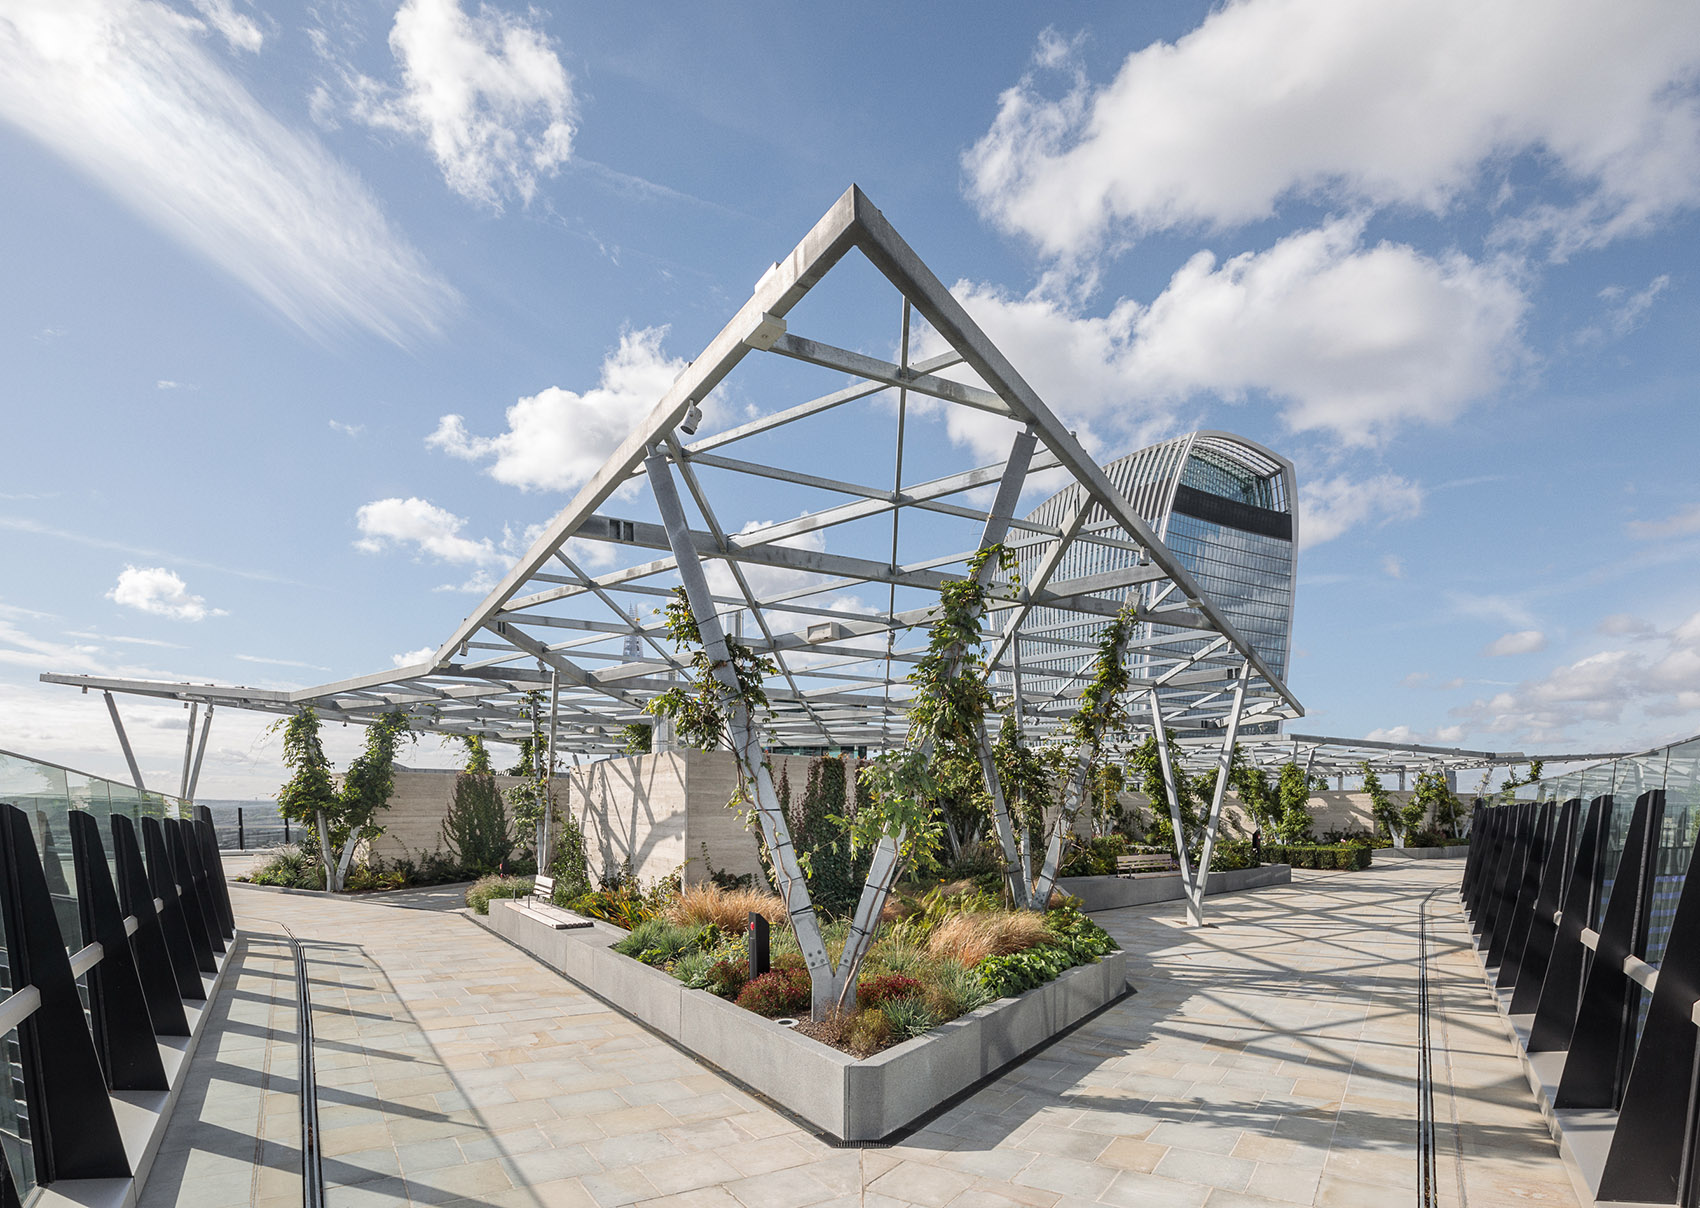 芬彻奇街120号屋顶花园，伦敦/伦敦市内最大的公共屋顶花园空间-39